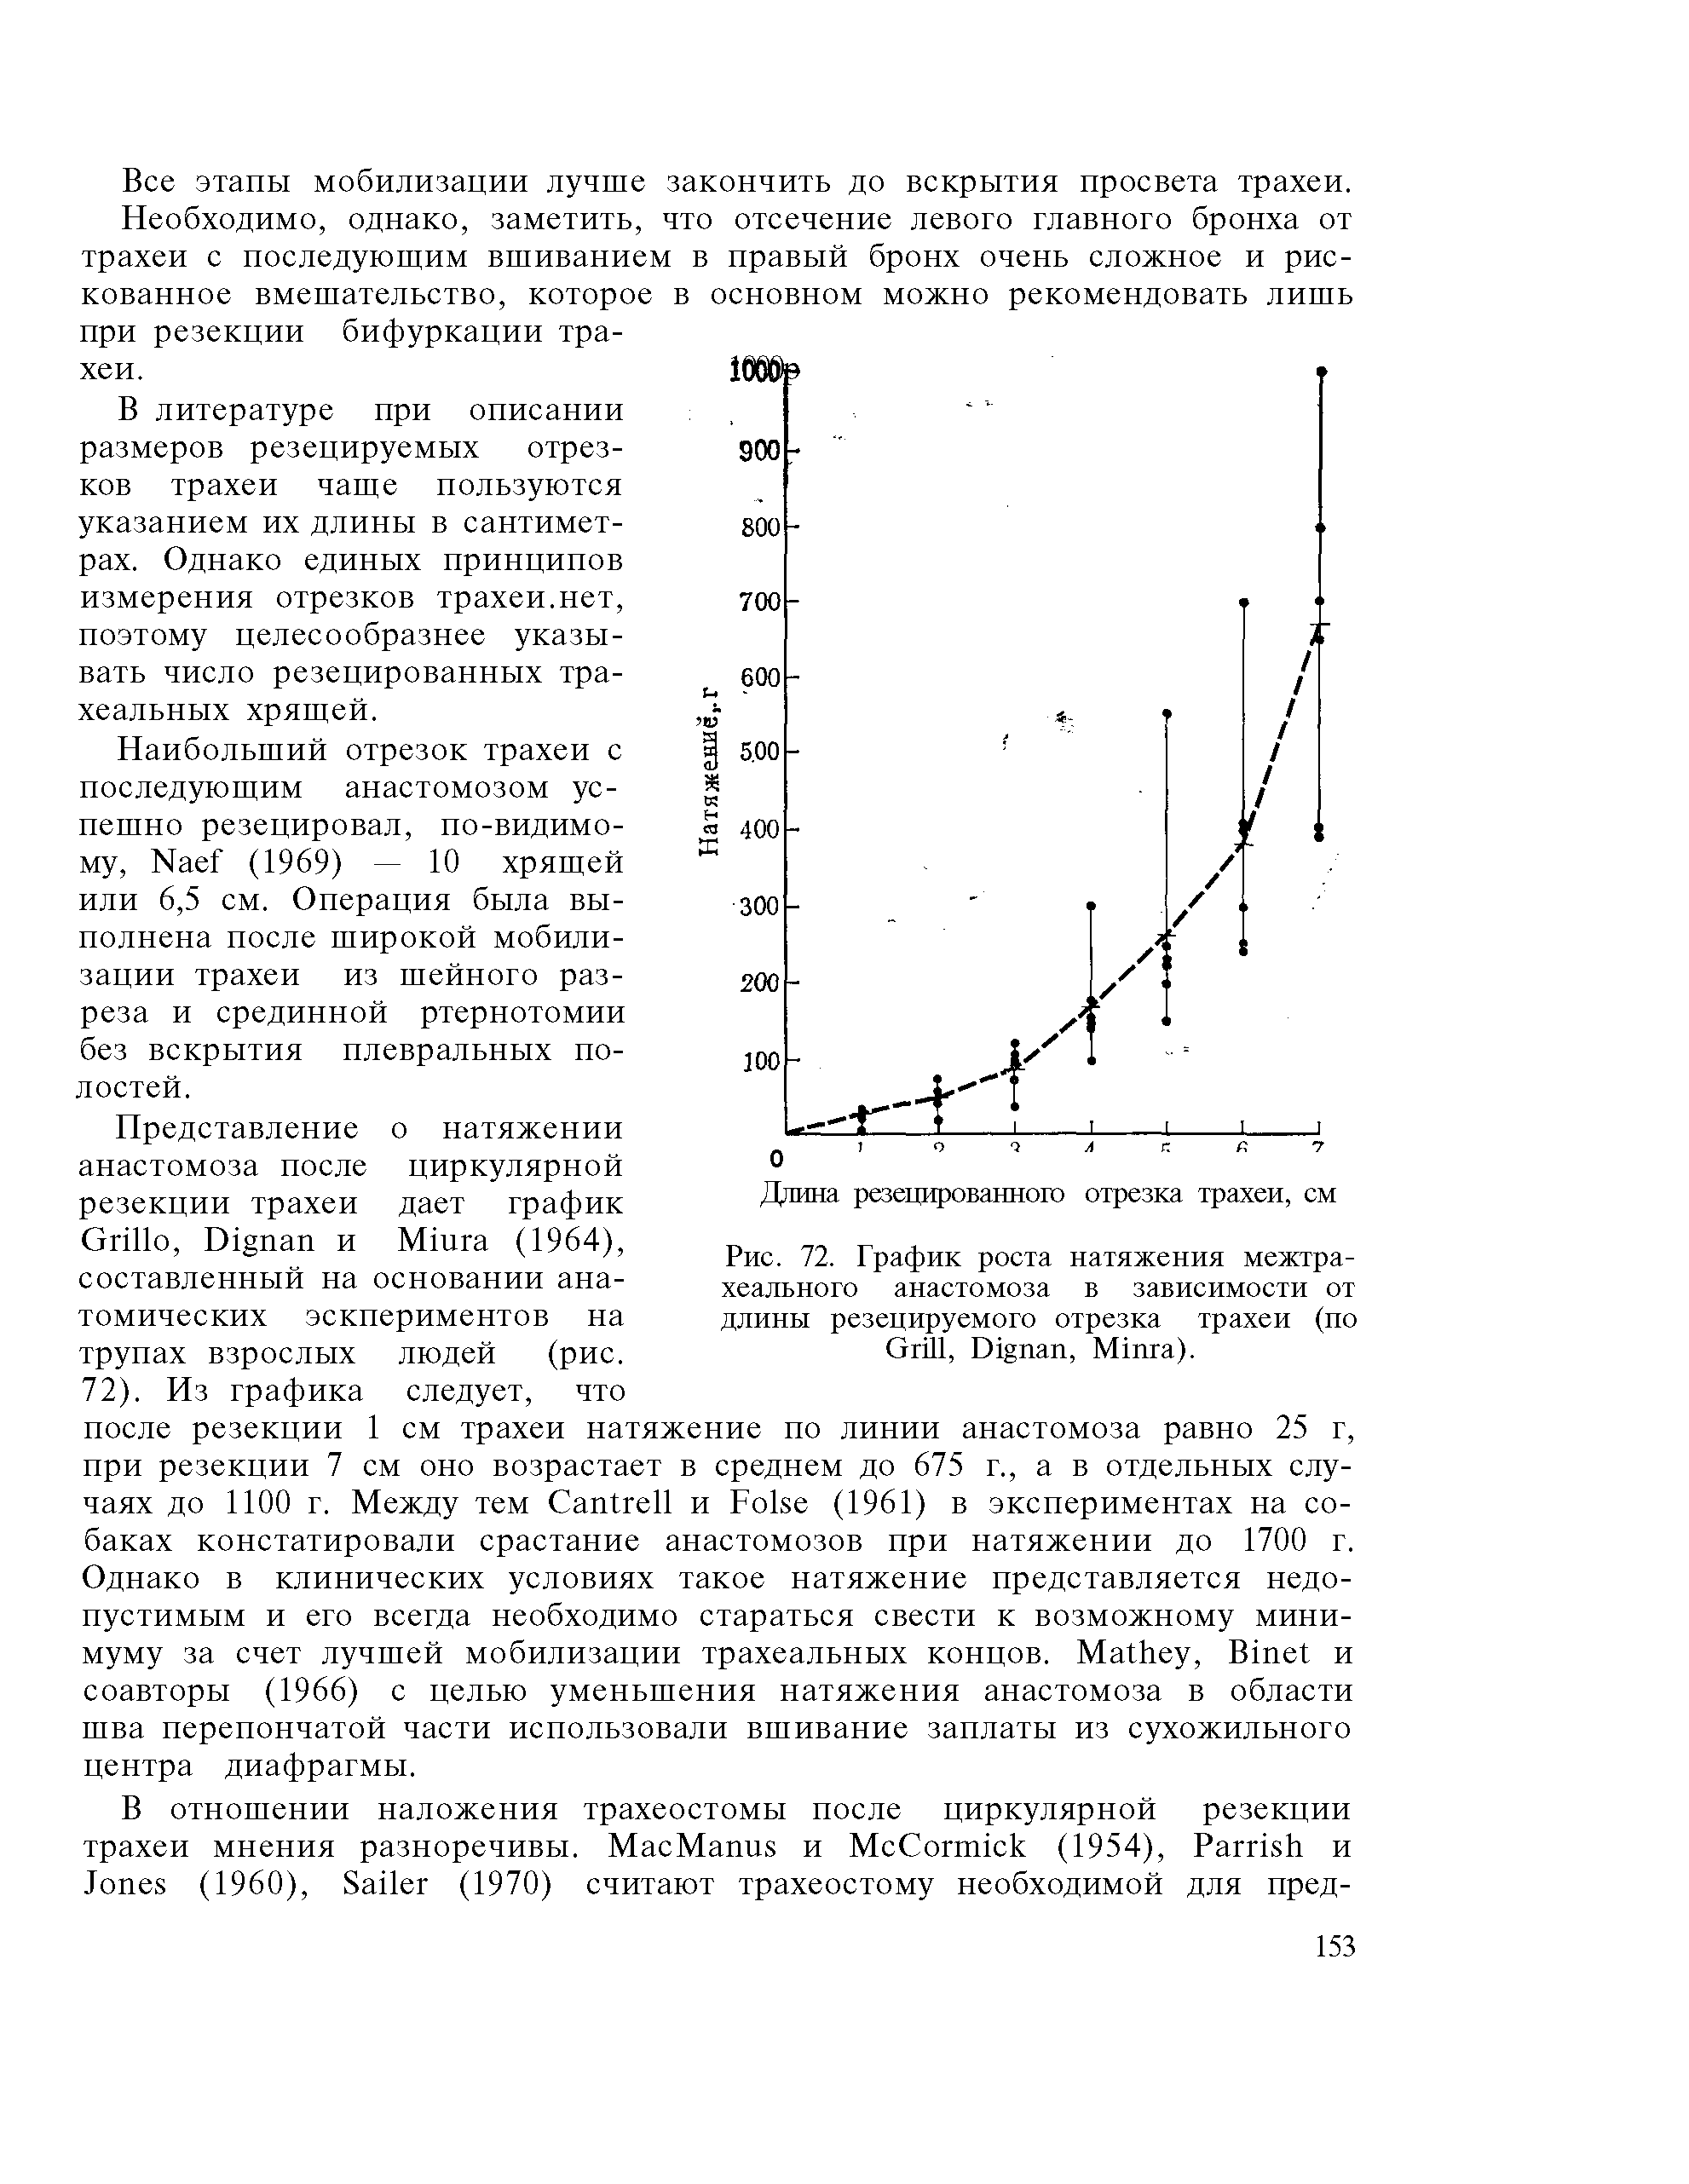 Рис. 72. График роста натяжения межтрахеального анастомоза в зависимости от длины резецируемого отрезка трахеи (по G , D , M ).